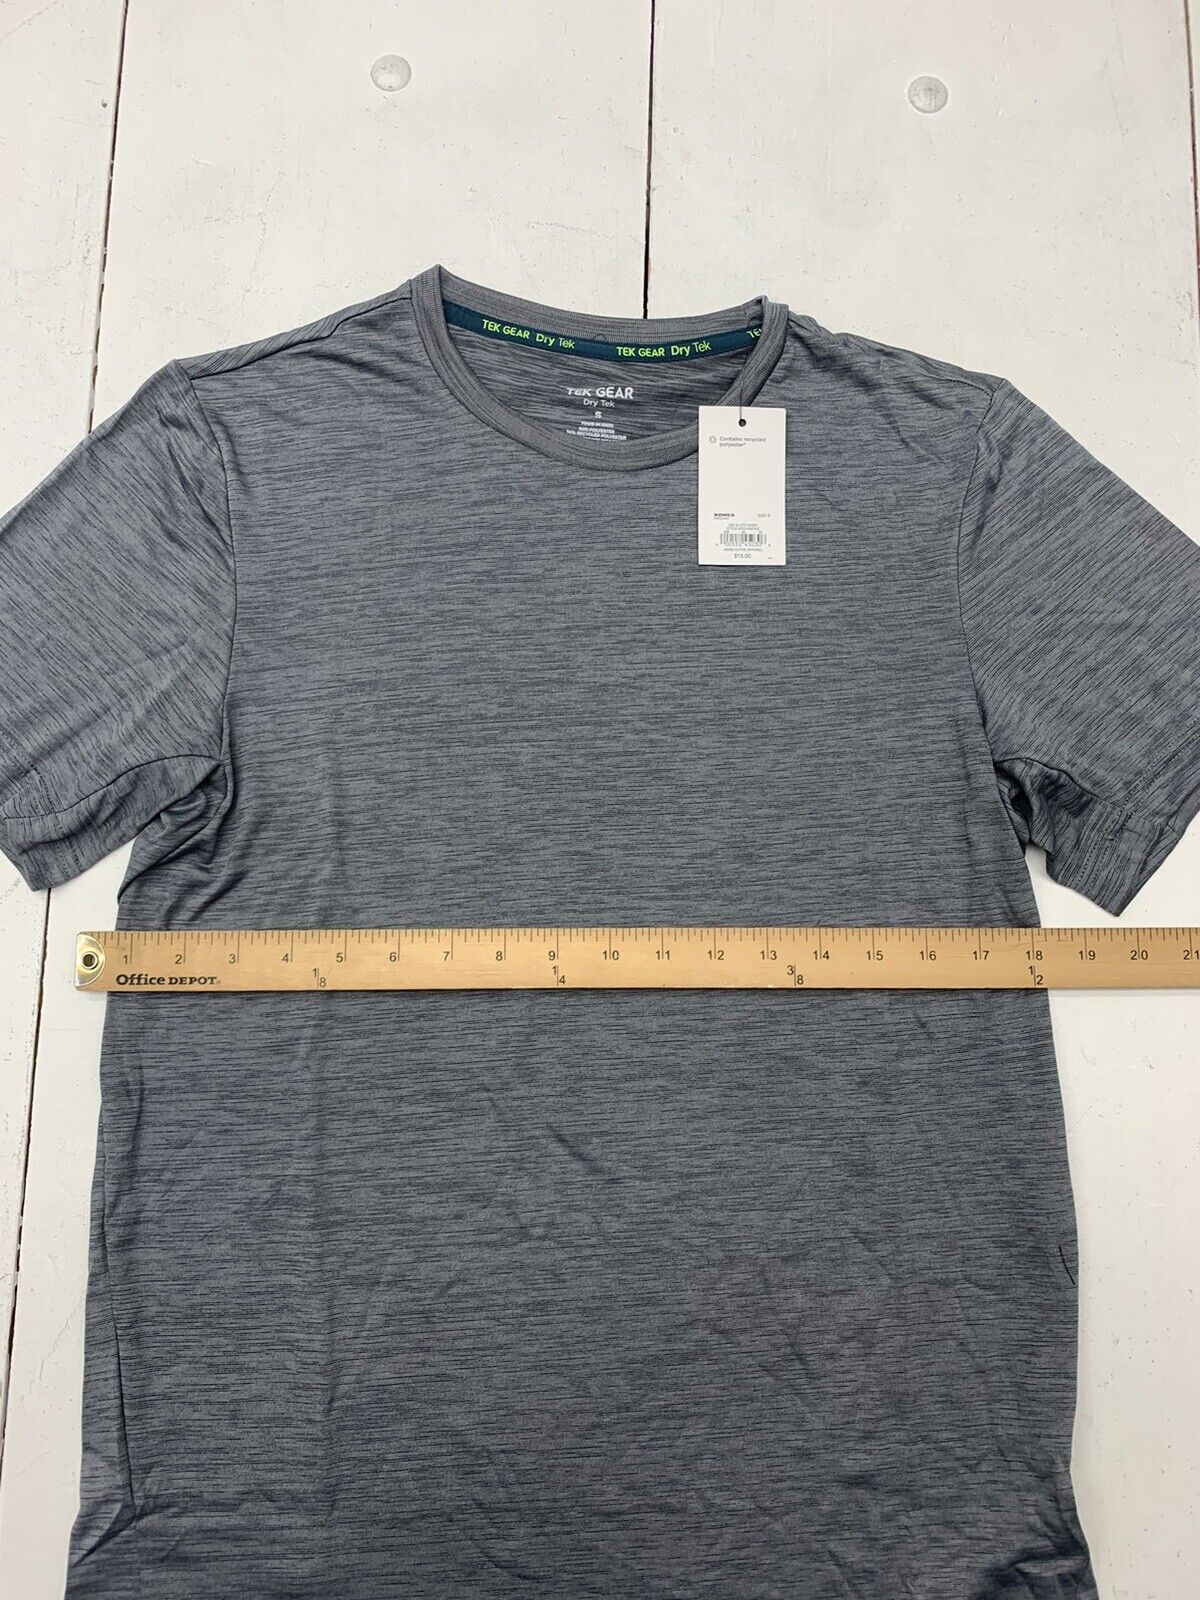 Tek Gear Gray Active T-Shirt Size 14 - 16 - 40% off